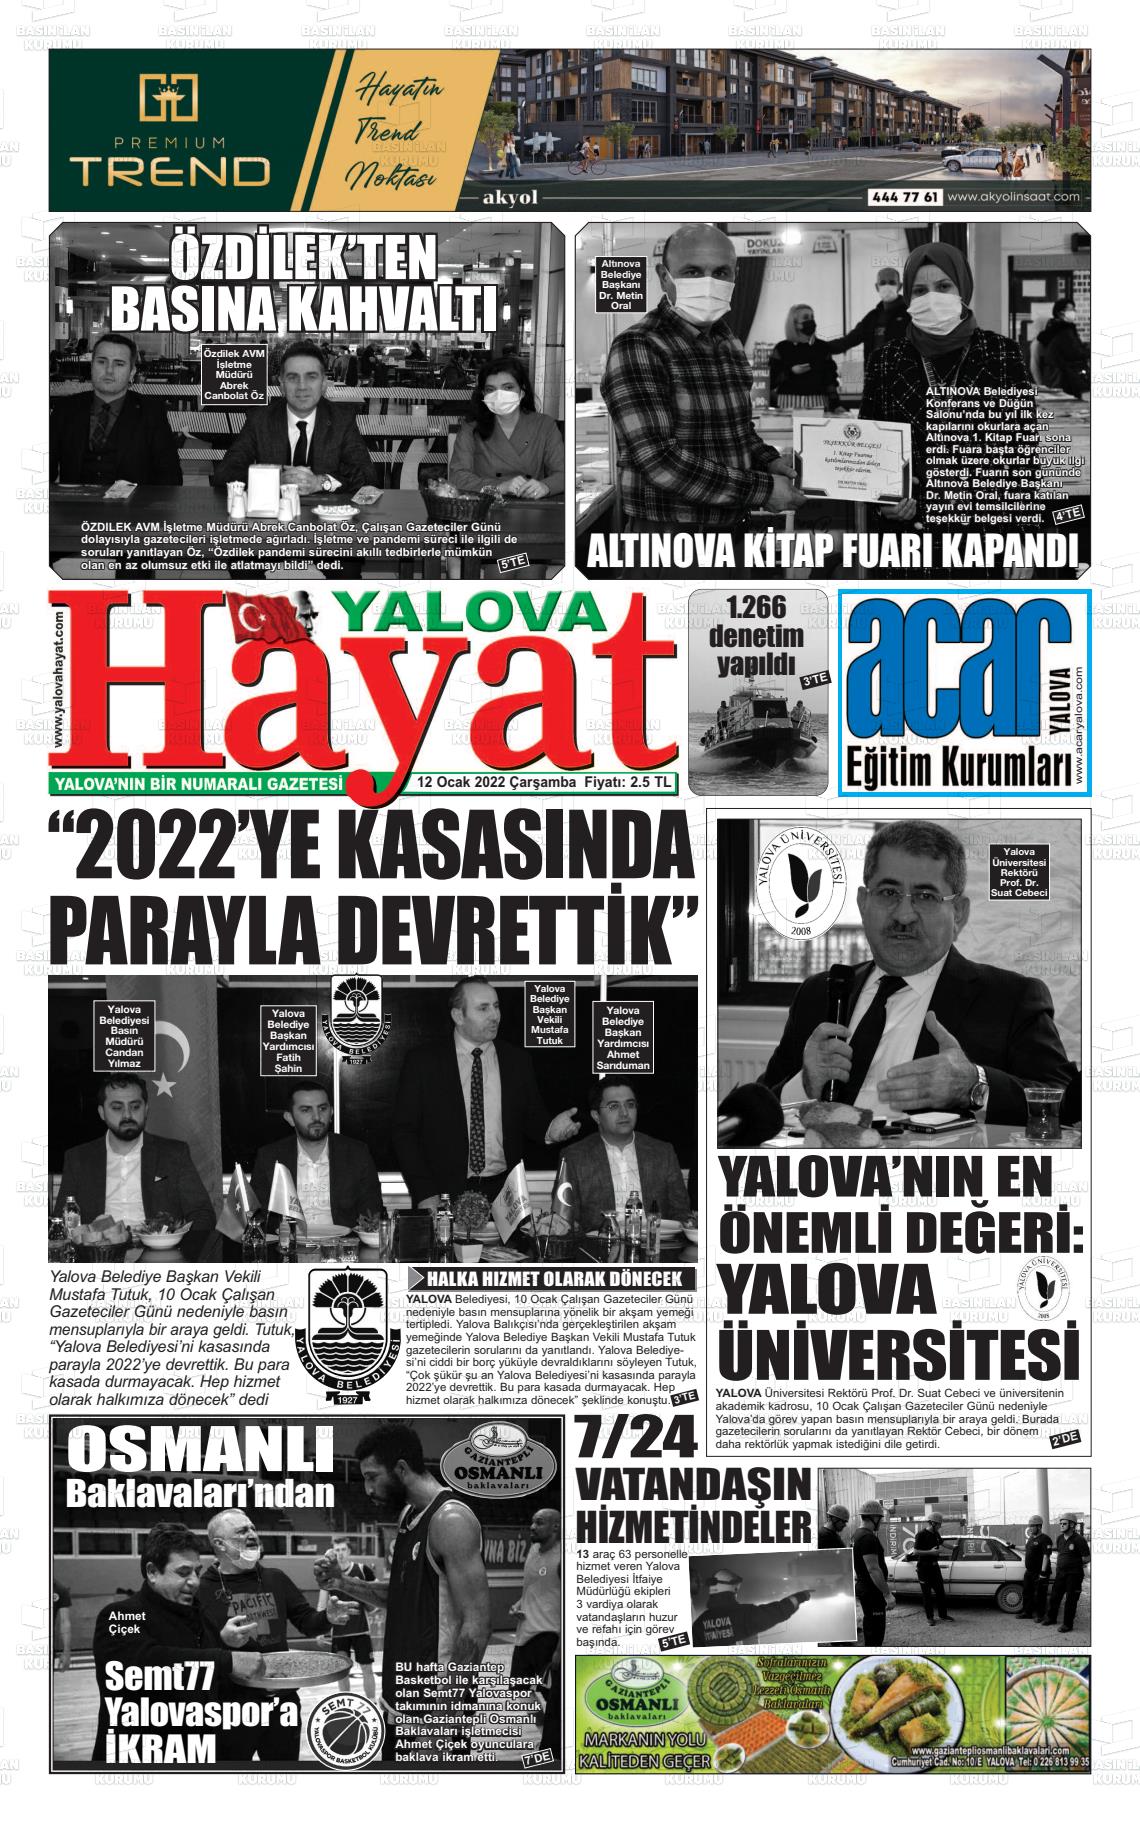 12 Ocak 2022 Yalova Hayat Gazete Manşeti